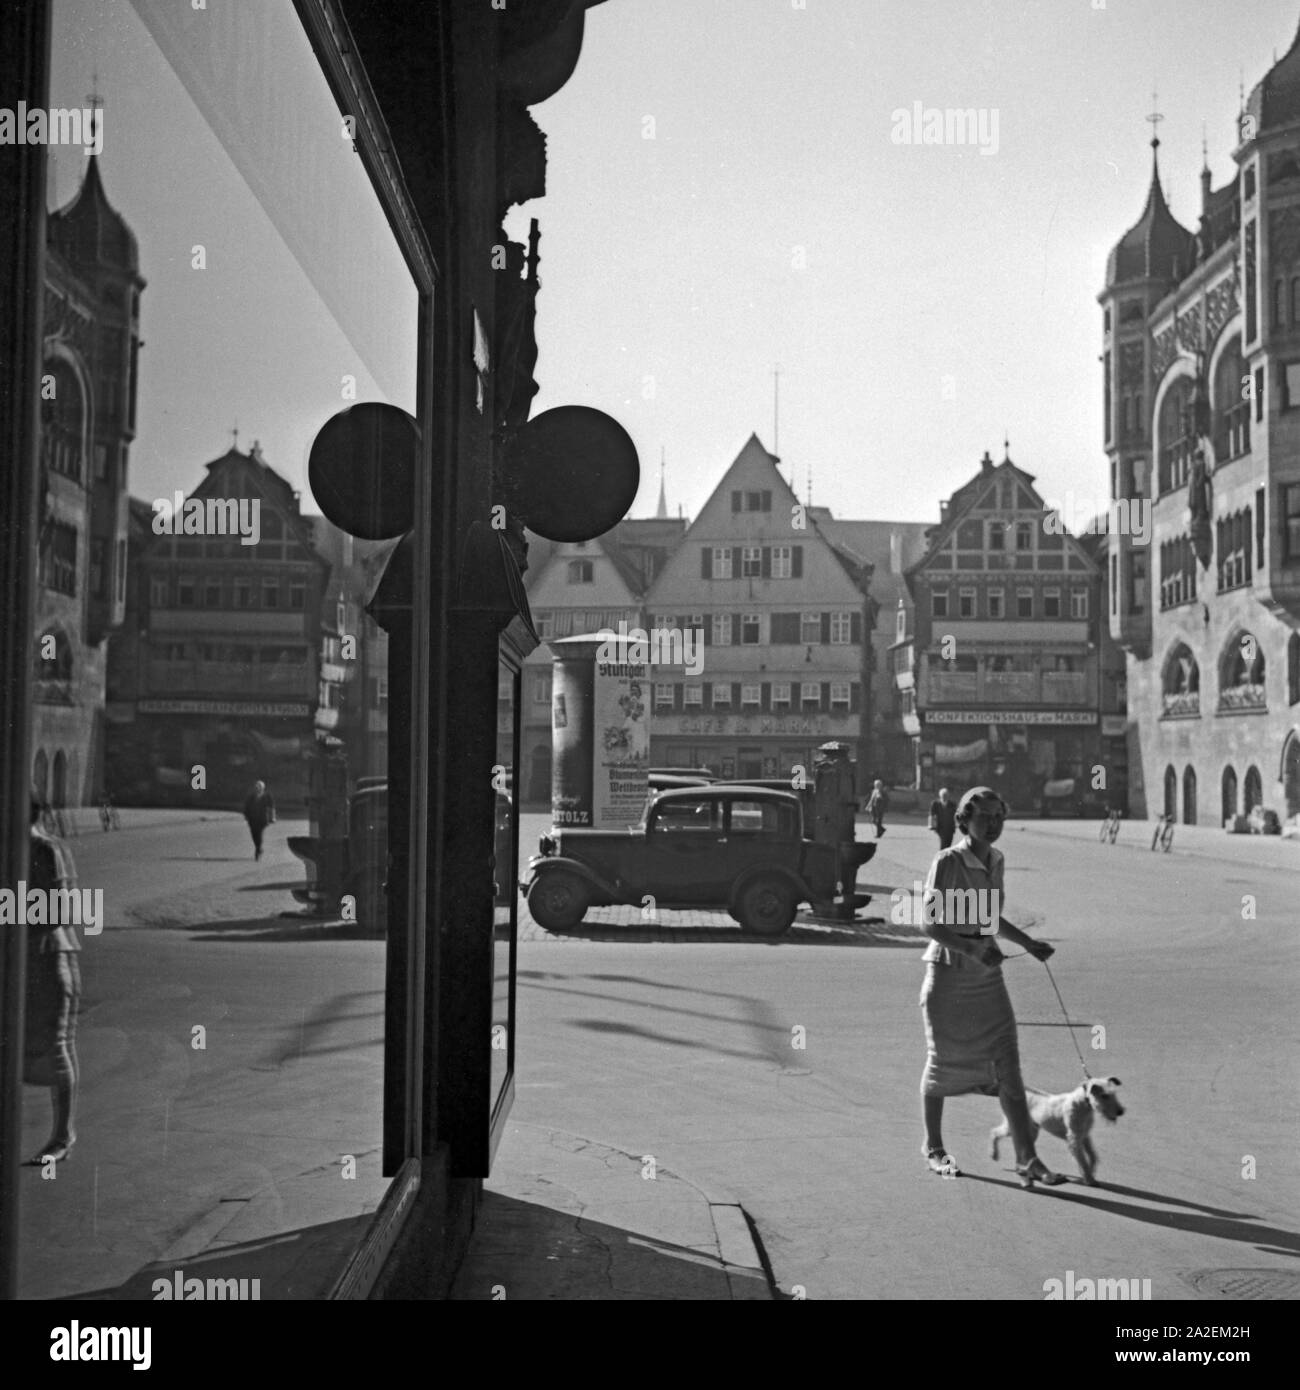 Eine junge Frau mit ihrem Foxterrier spaziert über den Markt à Stuttgart, Deutschland 1930er Jahre. Une jeune femme walkingh son chiot fox terrier sur le marché à Stuttgart, Allemagne 1930. Banque D'Images